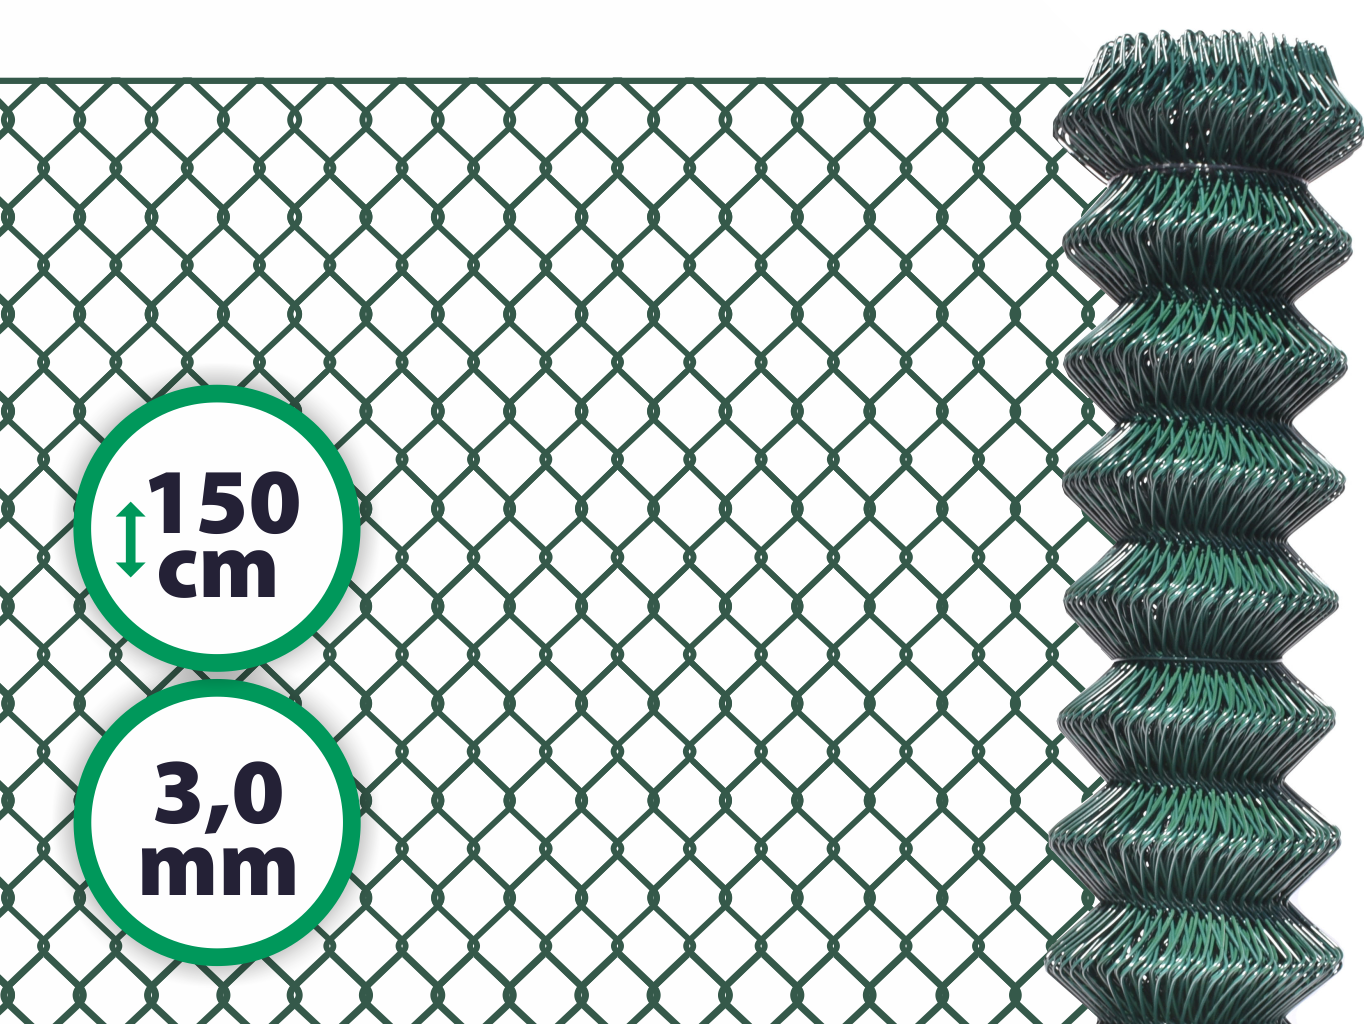 Pletivo poplastované SUPER – 150 cm bez ND (3,0 mm; 50x50 mm; PVC; zelené) PLOTY Sklad5 1502 50 8595068412725